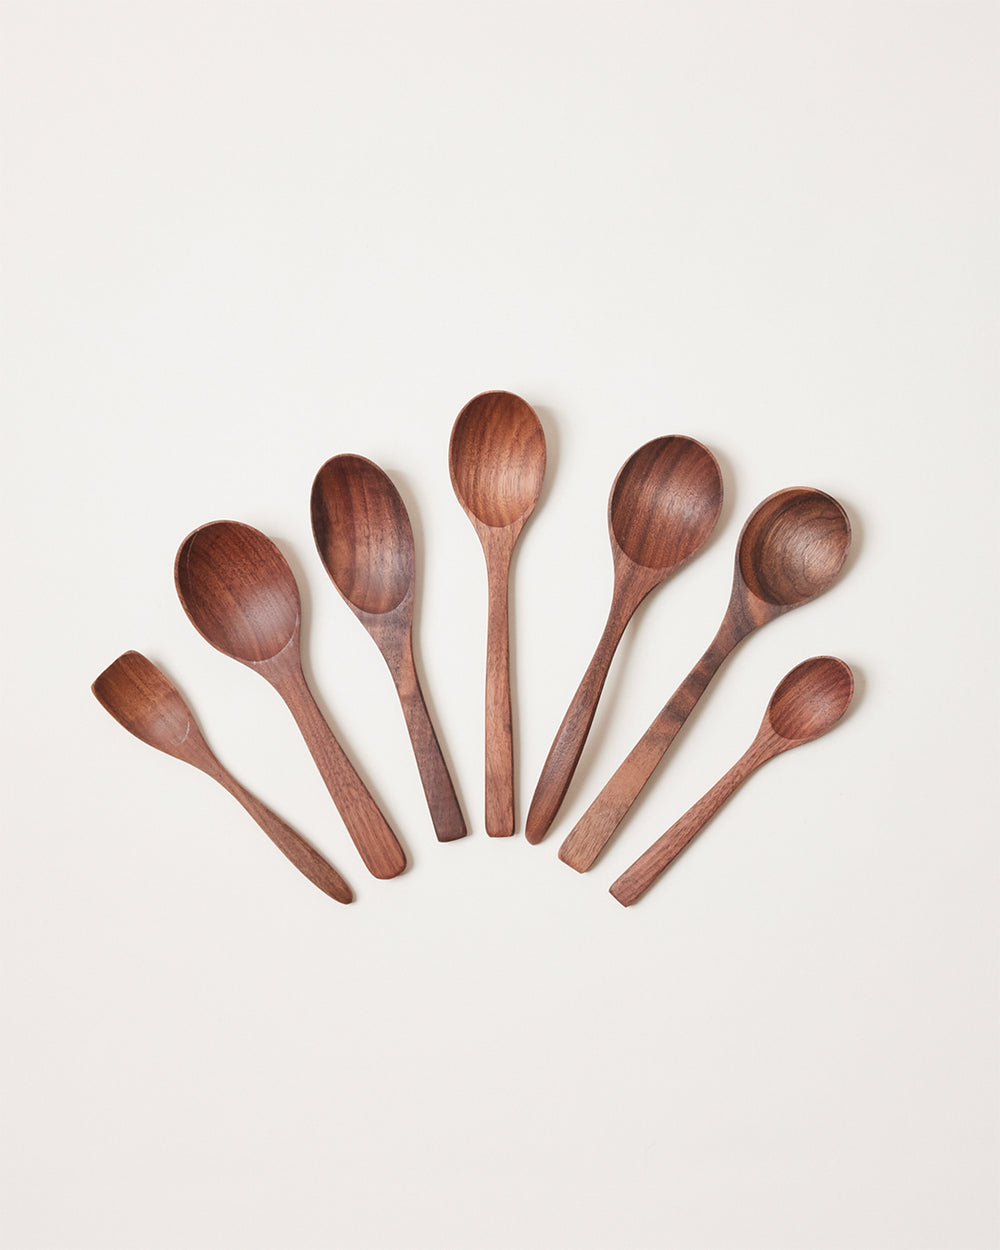 https://www.farmhousepottery.com/cdn/shop/products/essential-kitchen-little-spoon-set-walnut.jpg?v=1696252717&width=1000